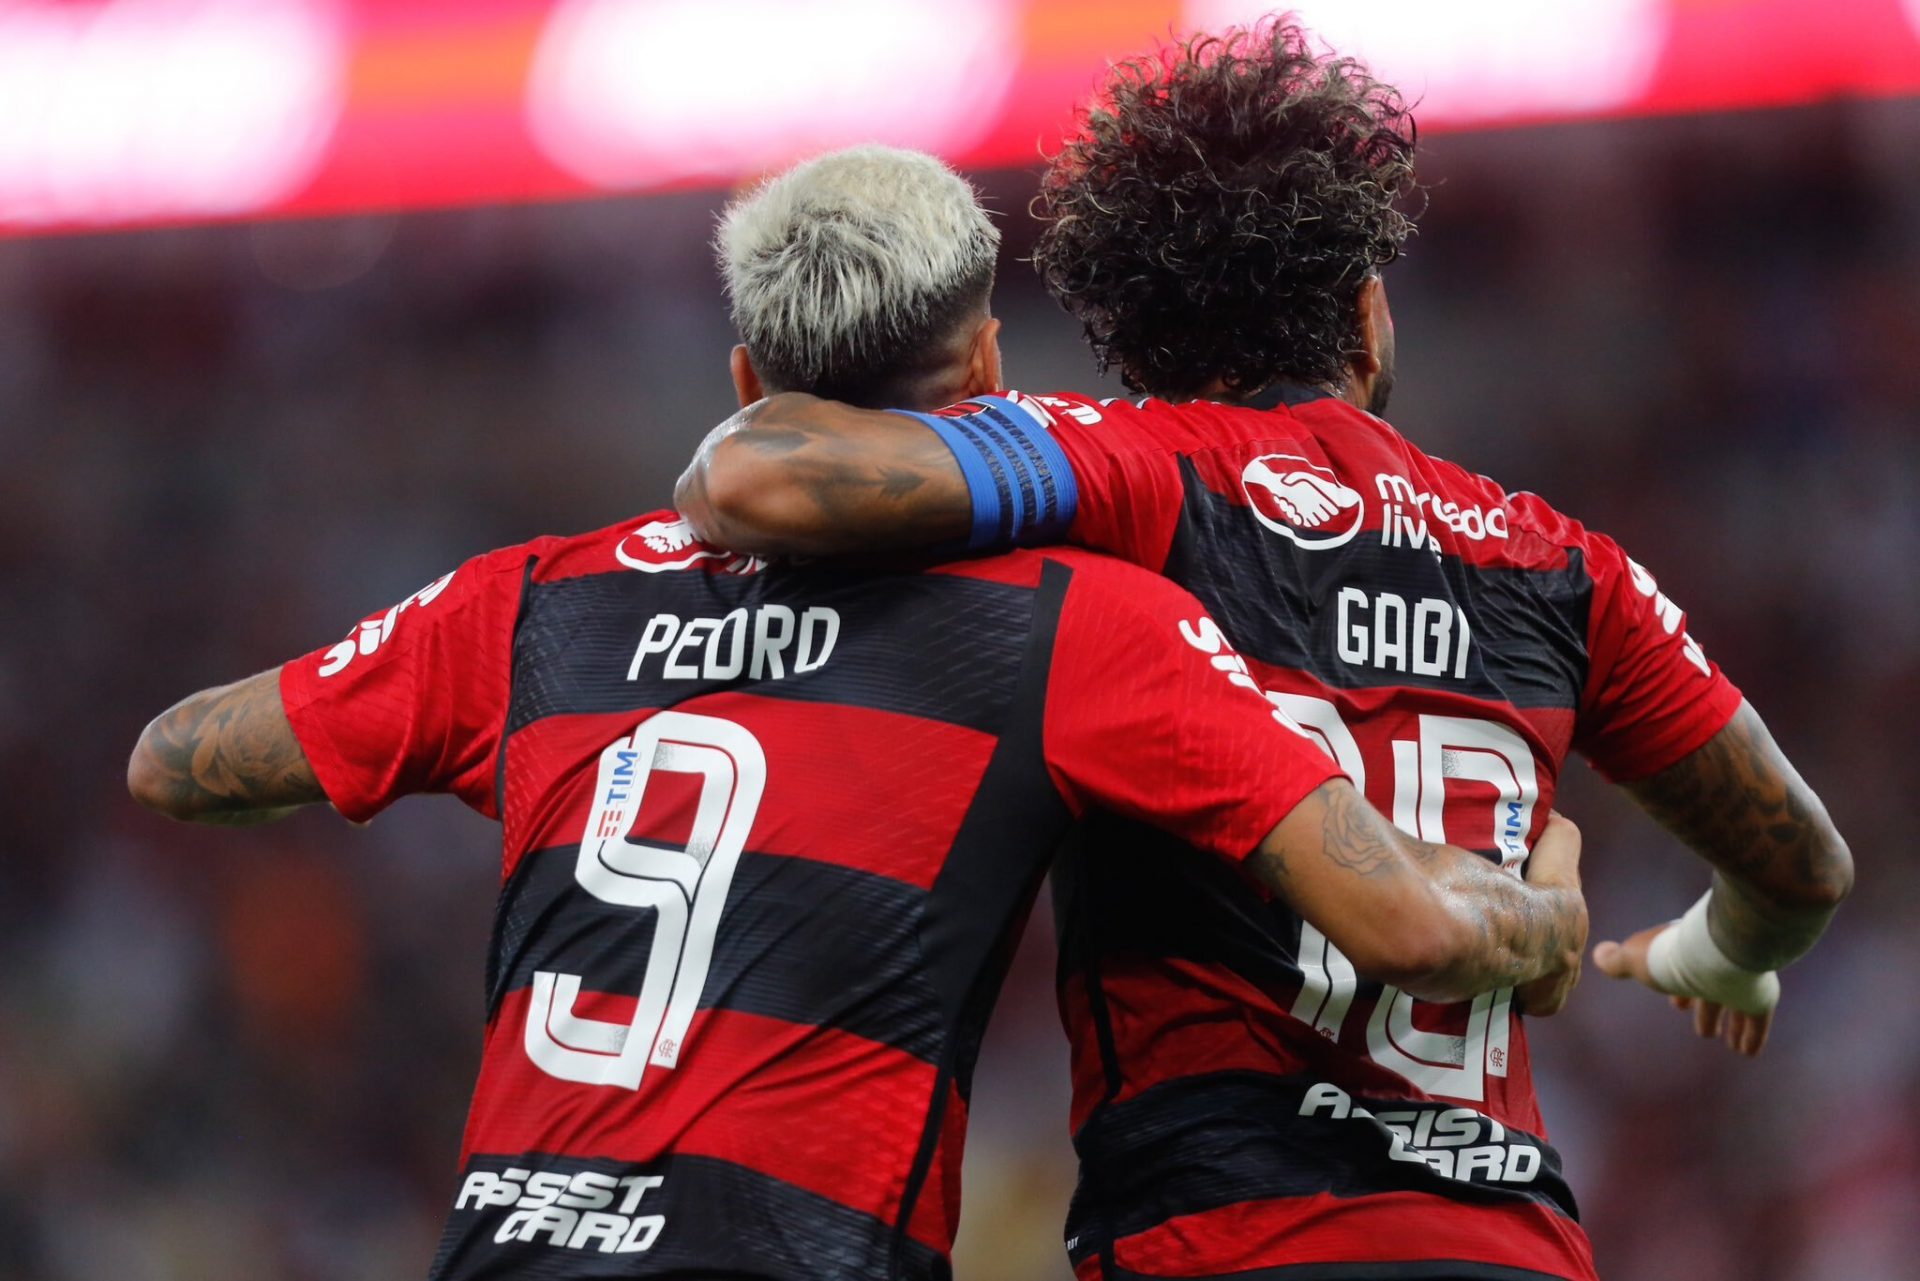 Os 10 maiores jogadores da história do Flamengo - ESPORTE - Br